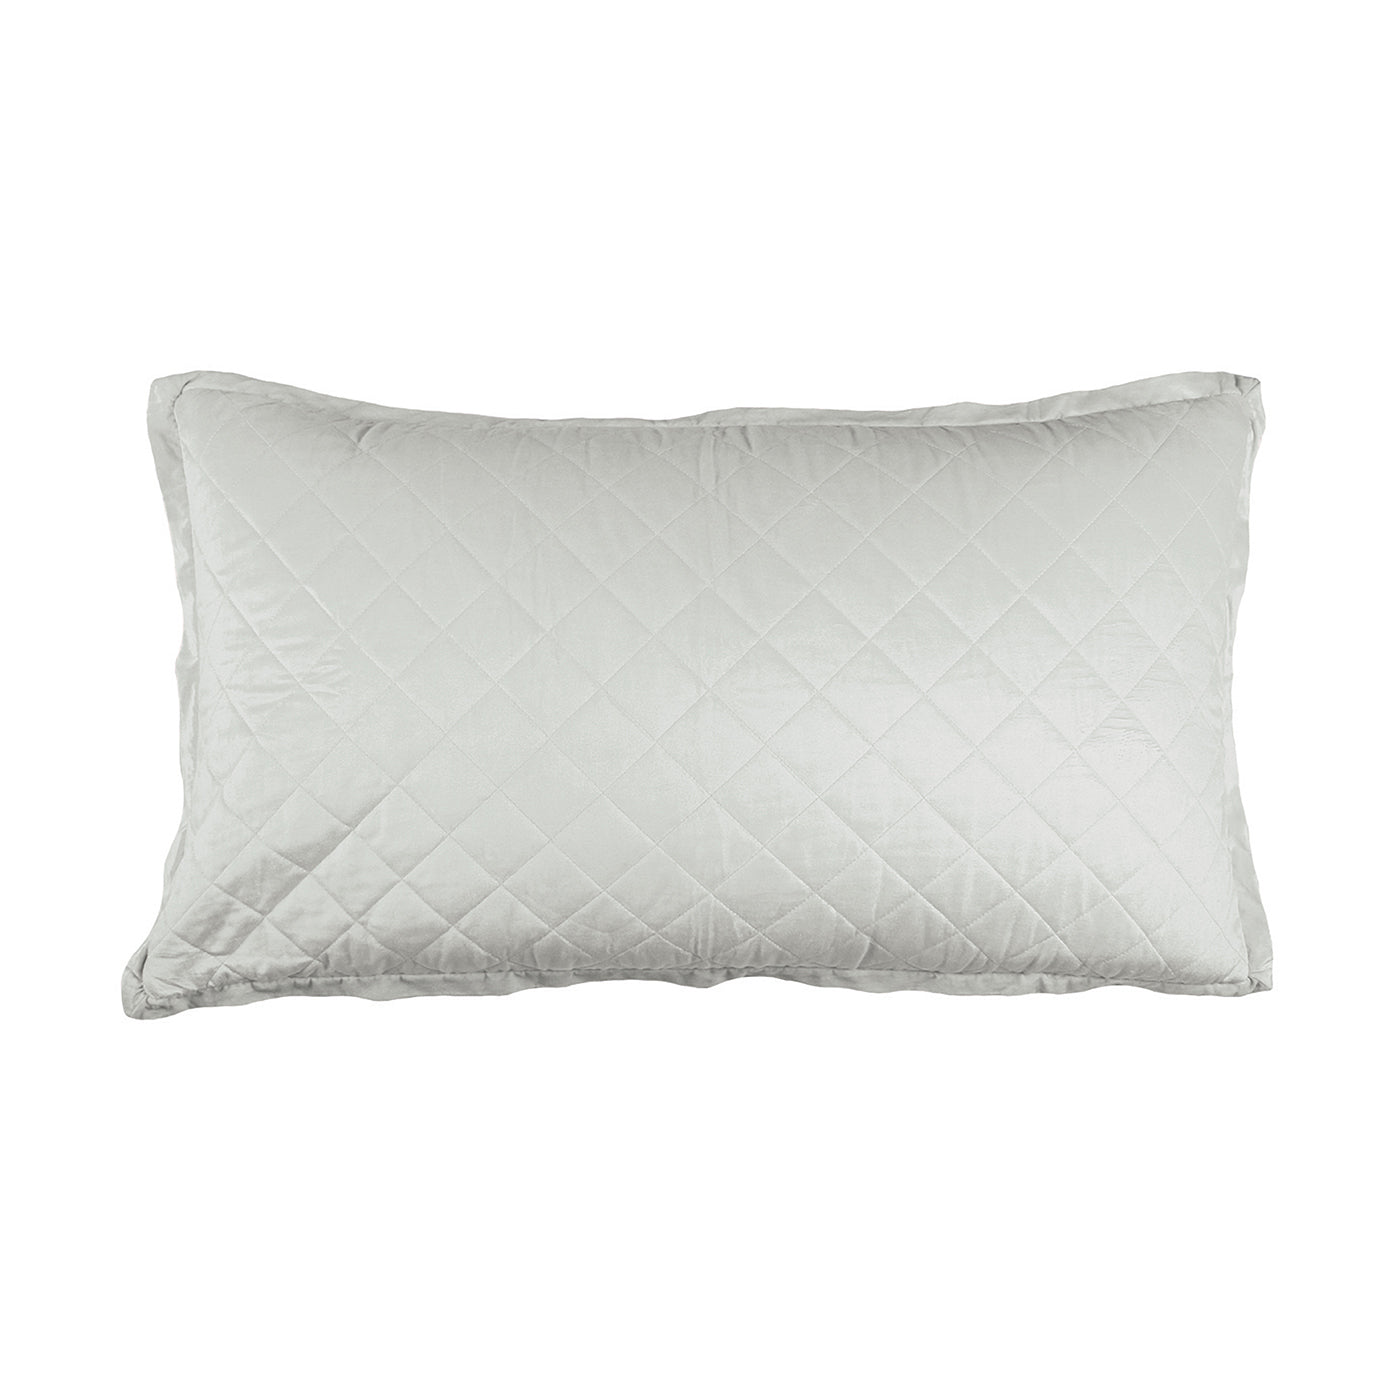 Chloe King Pillow Sham Celadon Velvet 20X36 (No Insert)